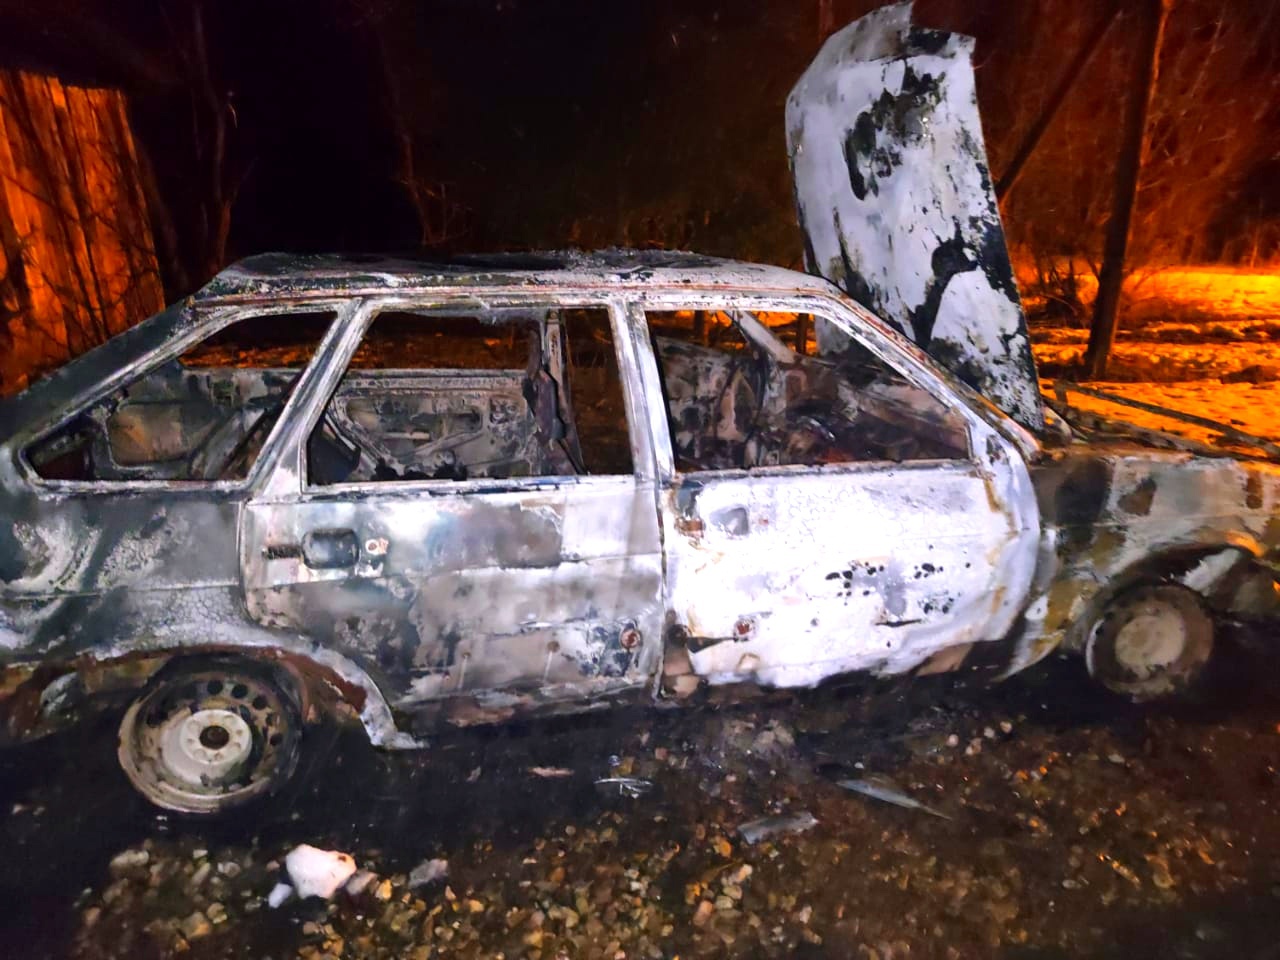 За сутки смоленские спасатели дважды выезжали на возгорания автомобилей